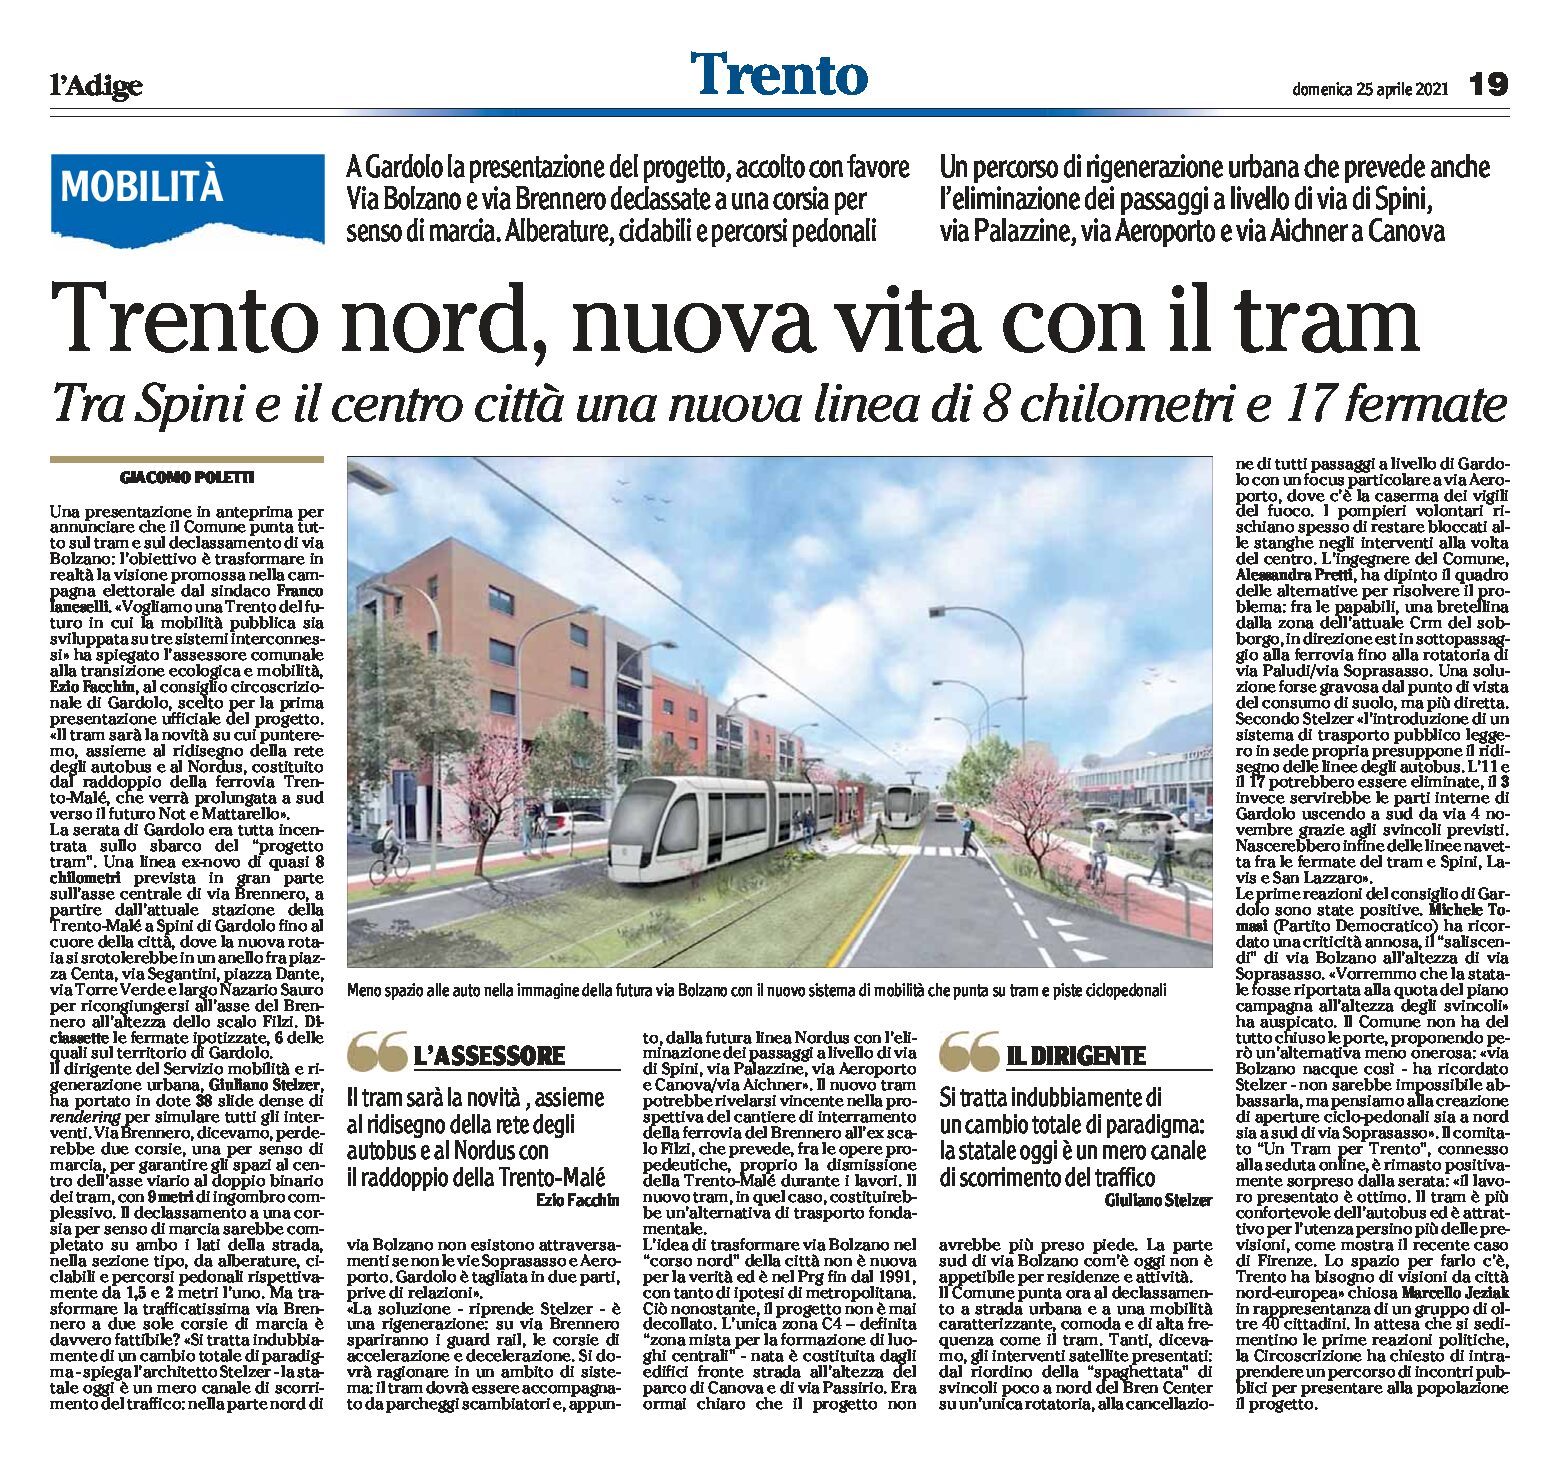 Trento Nord: nuova vita con il tram.Tra Spini e il centro città una nuova linea di 8 km e 17 fermate